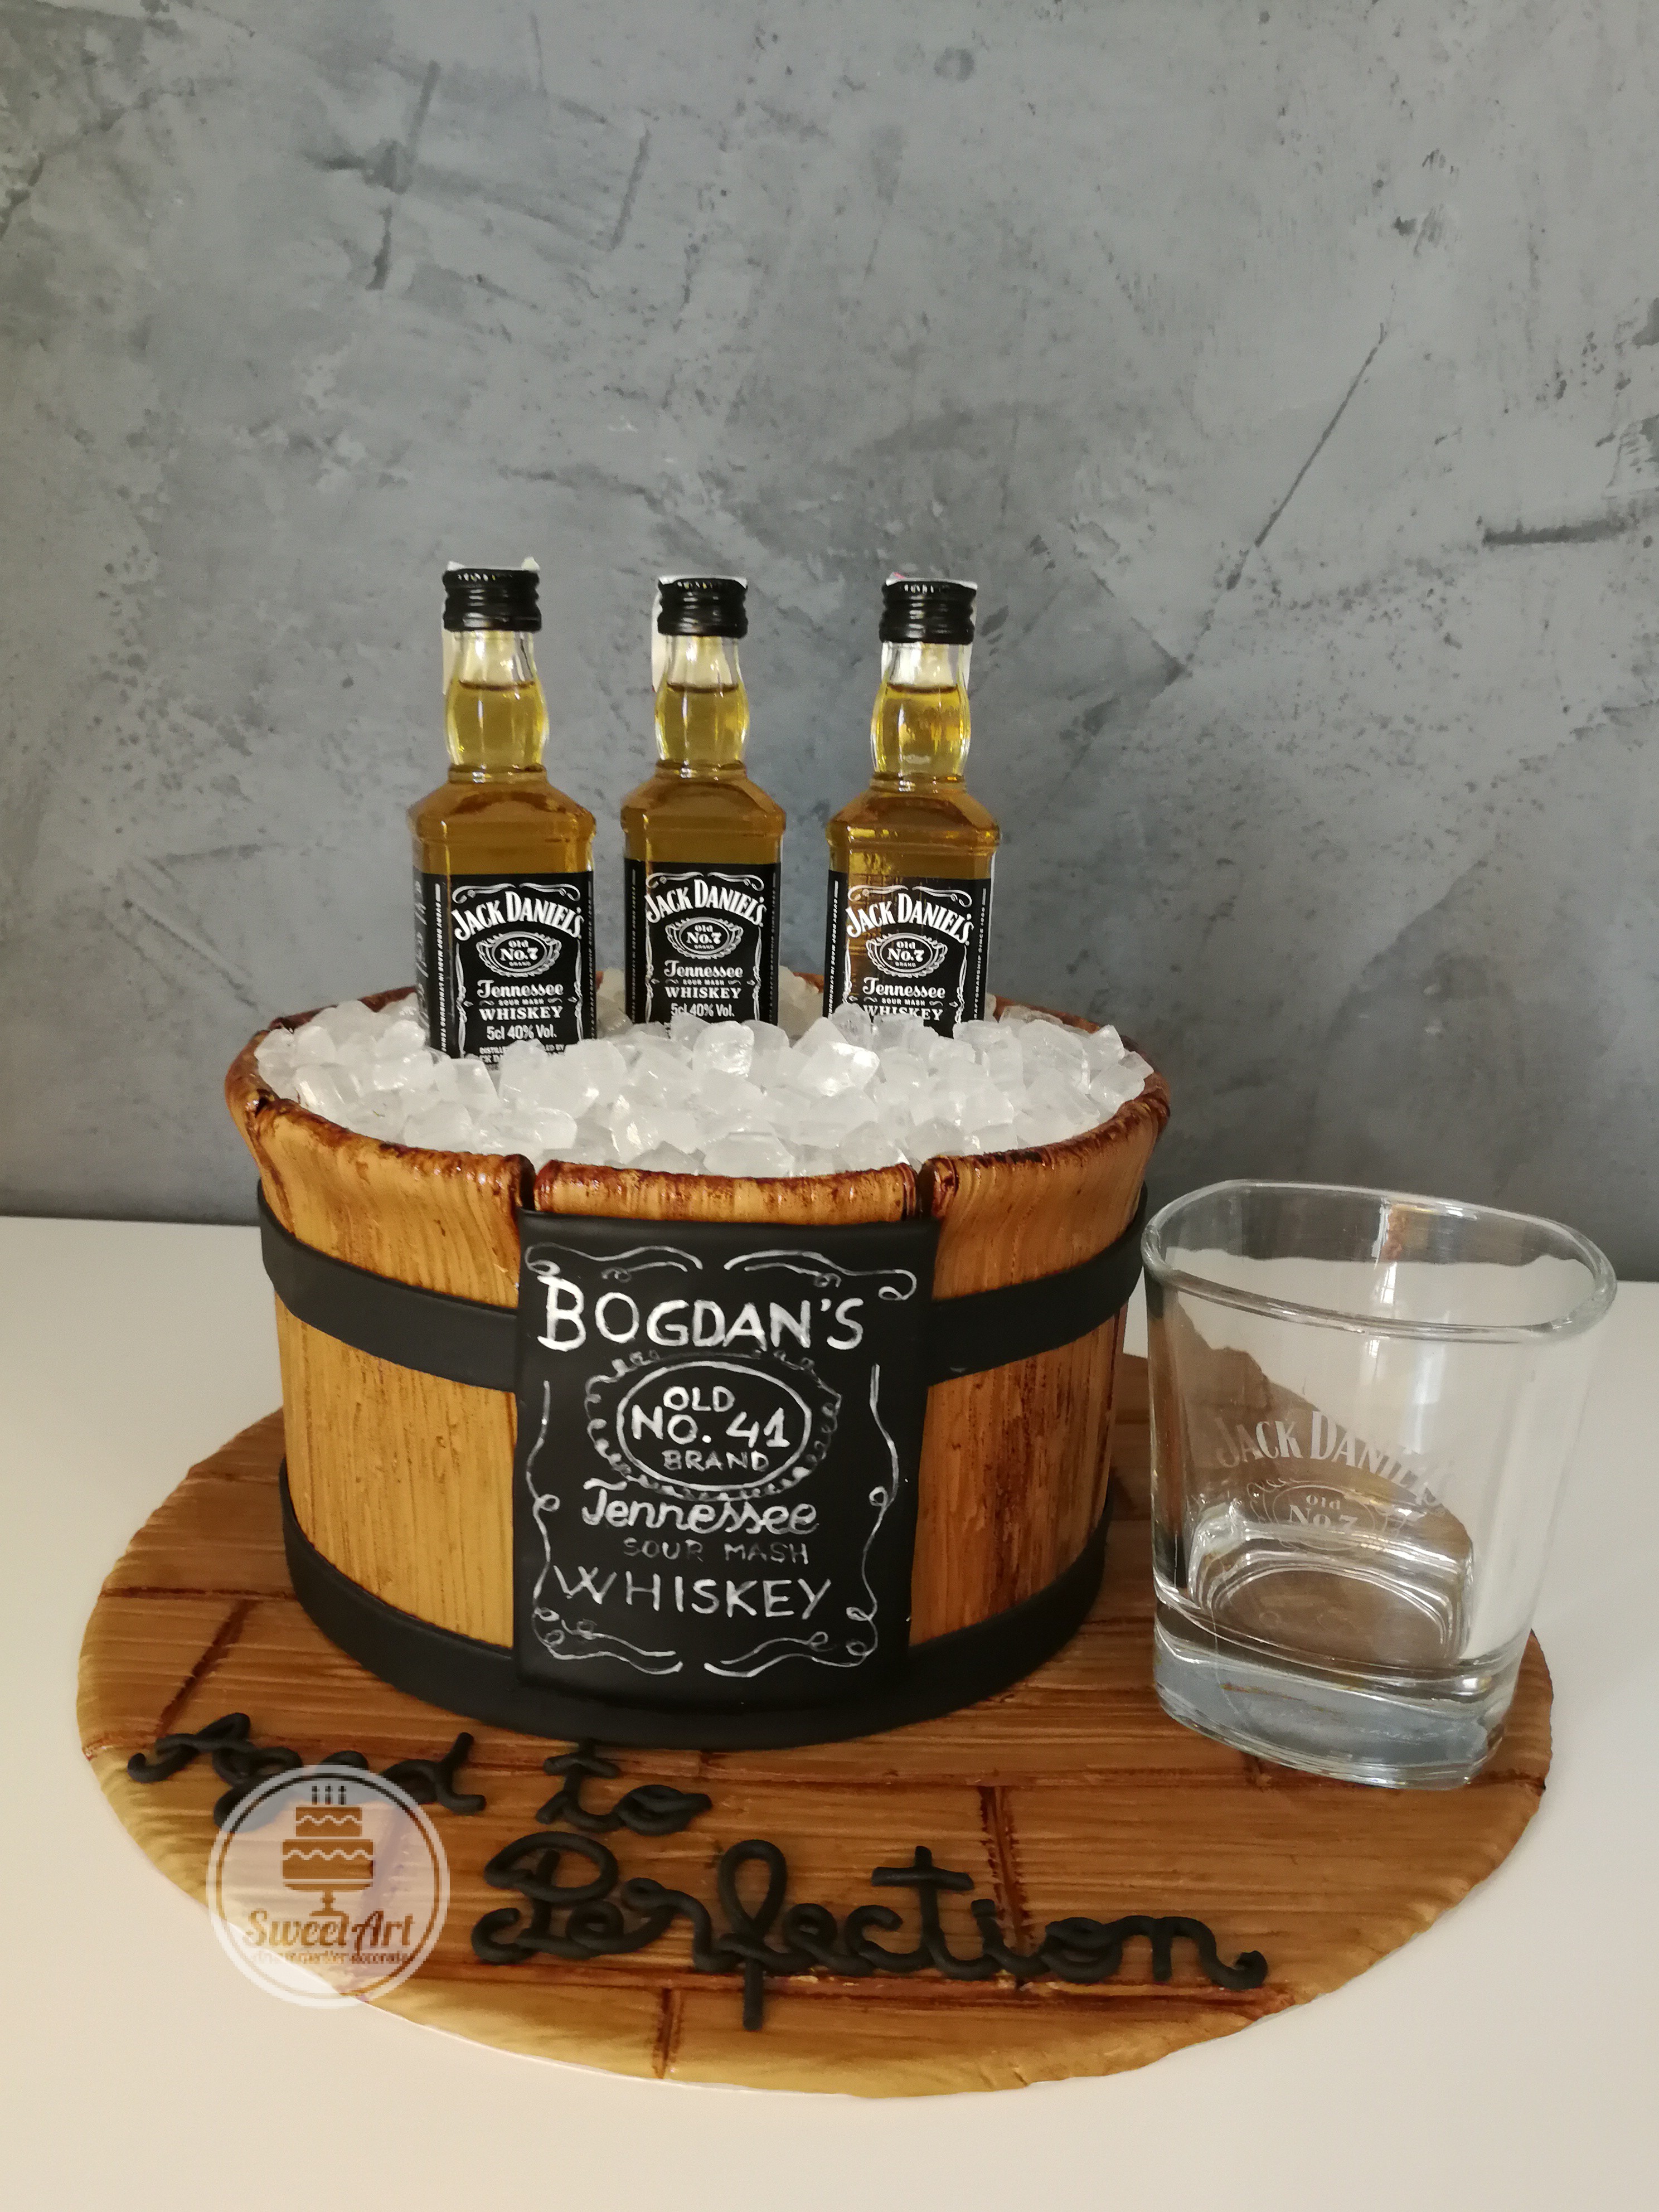 Tort frapieră de lemn cu gheață din zahăr și whiskey Jack Daniel's pe platou de lemn, etichetă pictată manual